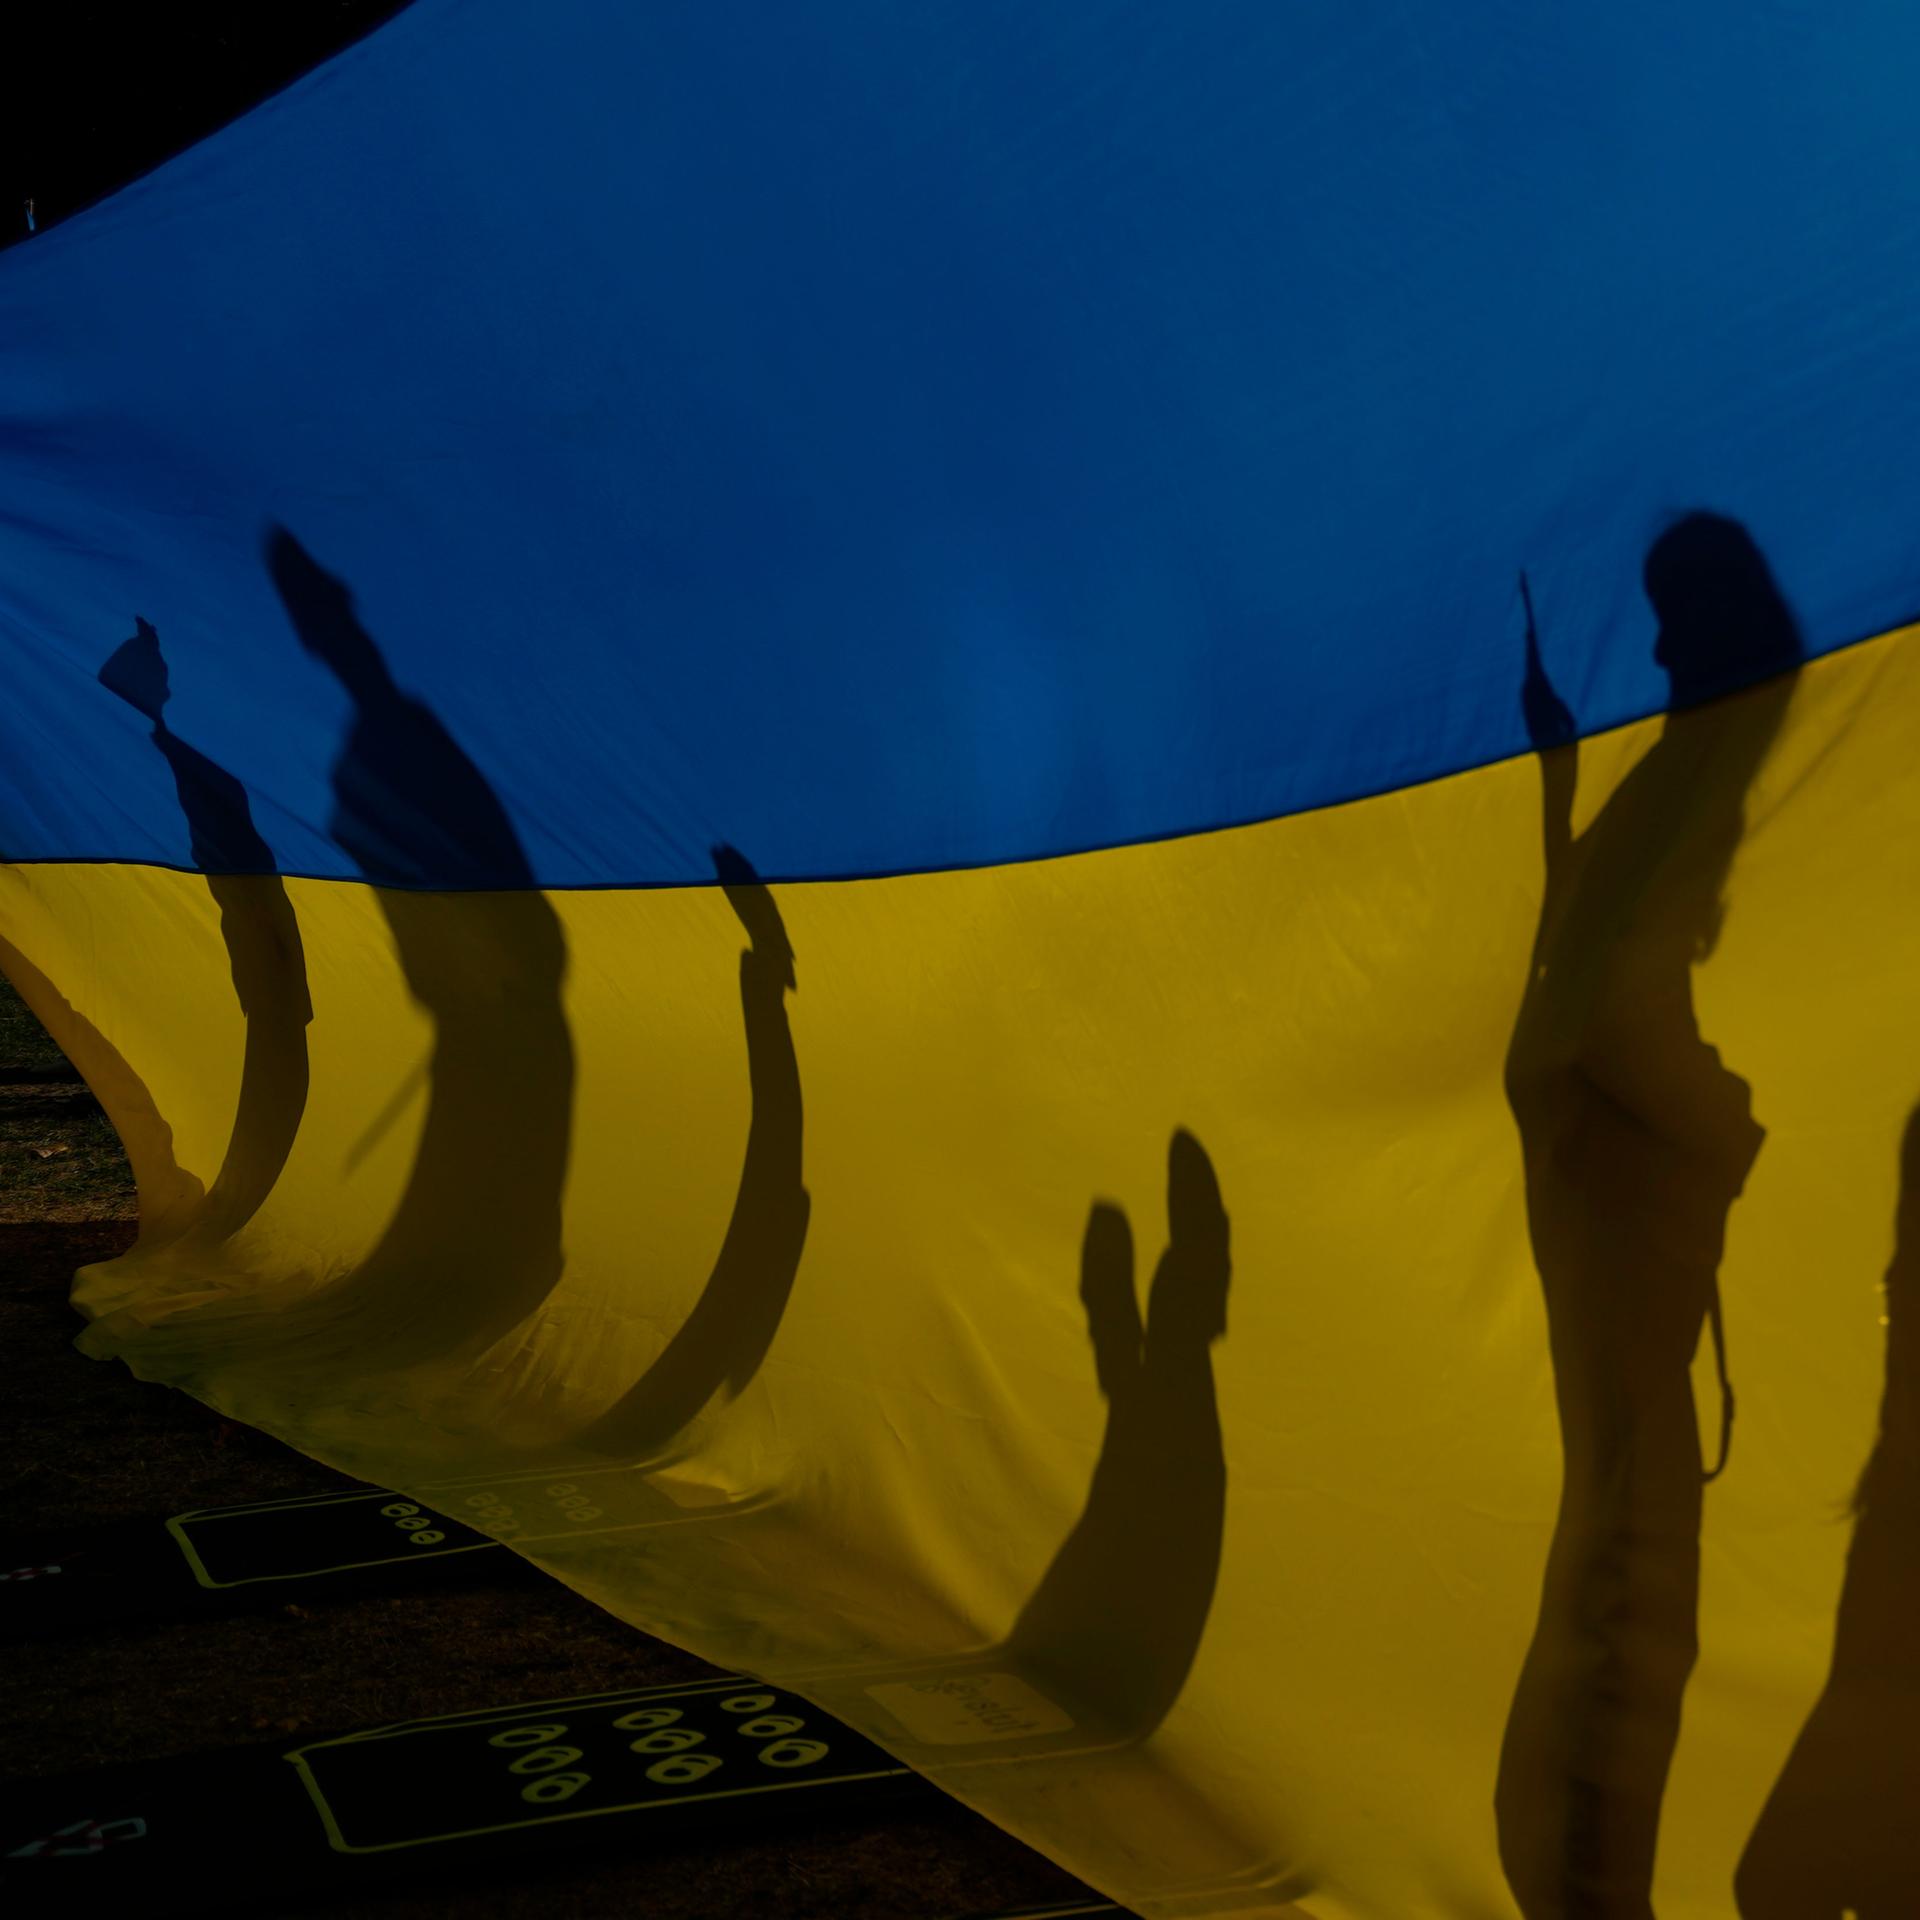 Literatur über die Ukraine – Das Land hinter der blau-gelben Flagge